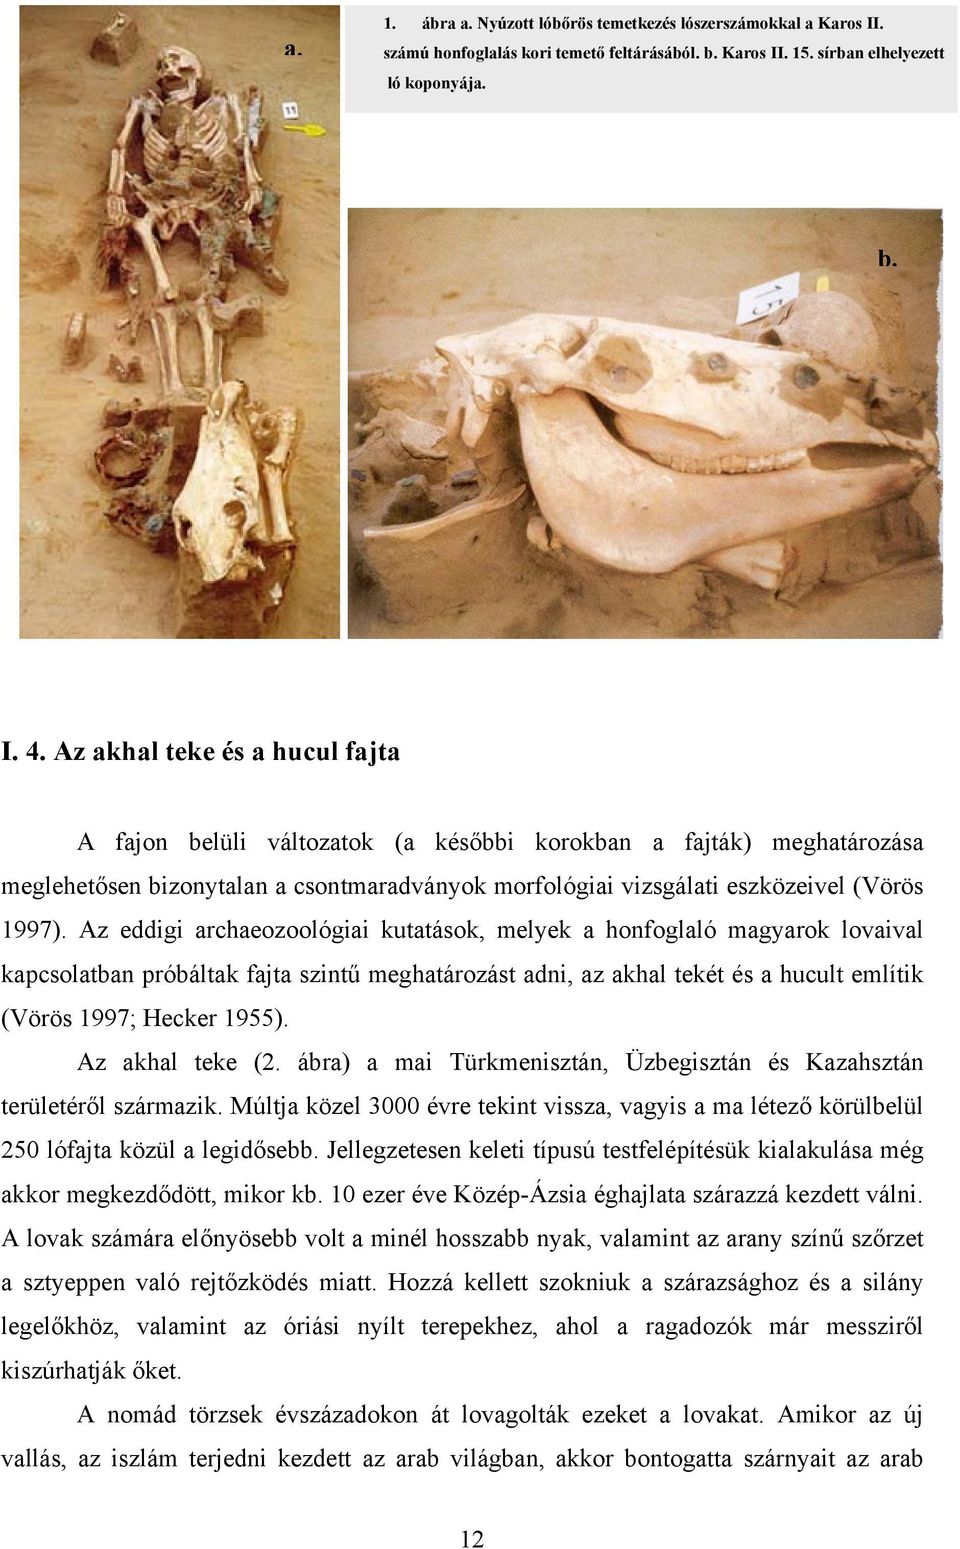 Az eddigi archaeozoológiai kutatások, melyek a honfoglaló magyarok lovaival kapcsolatban próbáltak fajta szintű meghatározást adni, az akhal tekét és a hucult említik (Vörös 1997; Hecker 1955).